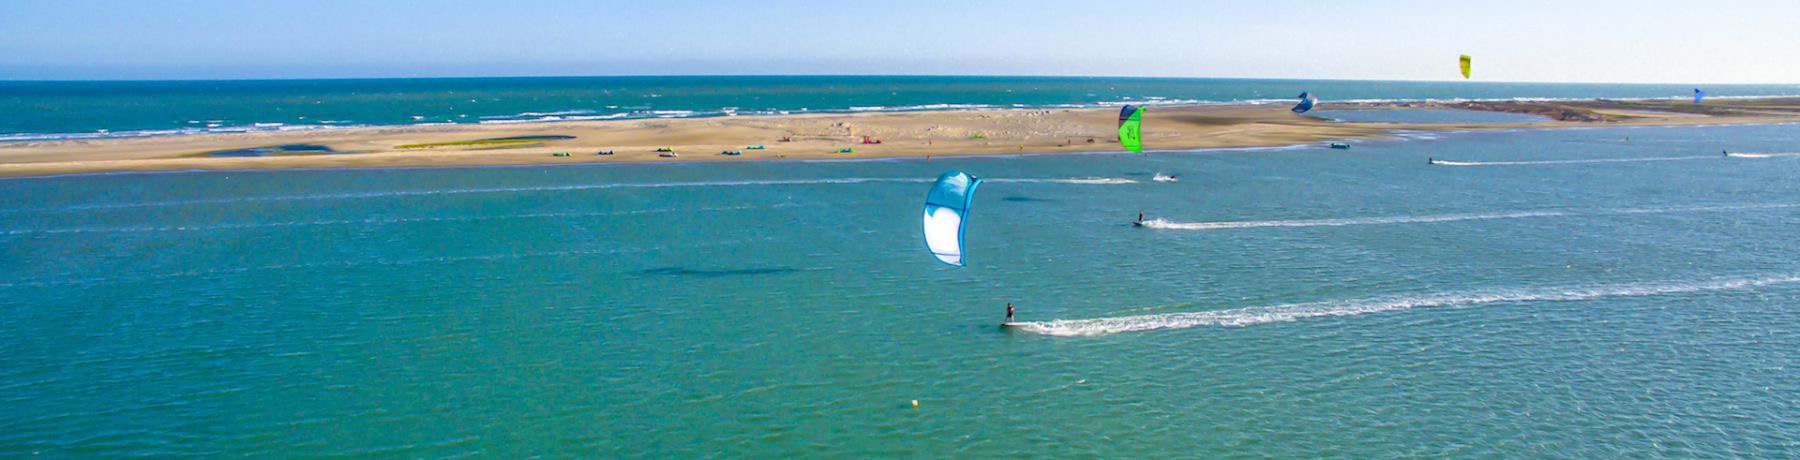 gallery/mannar kite surf ocean holiday sri lanka